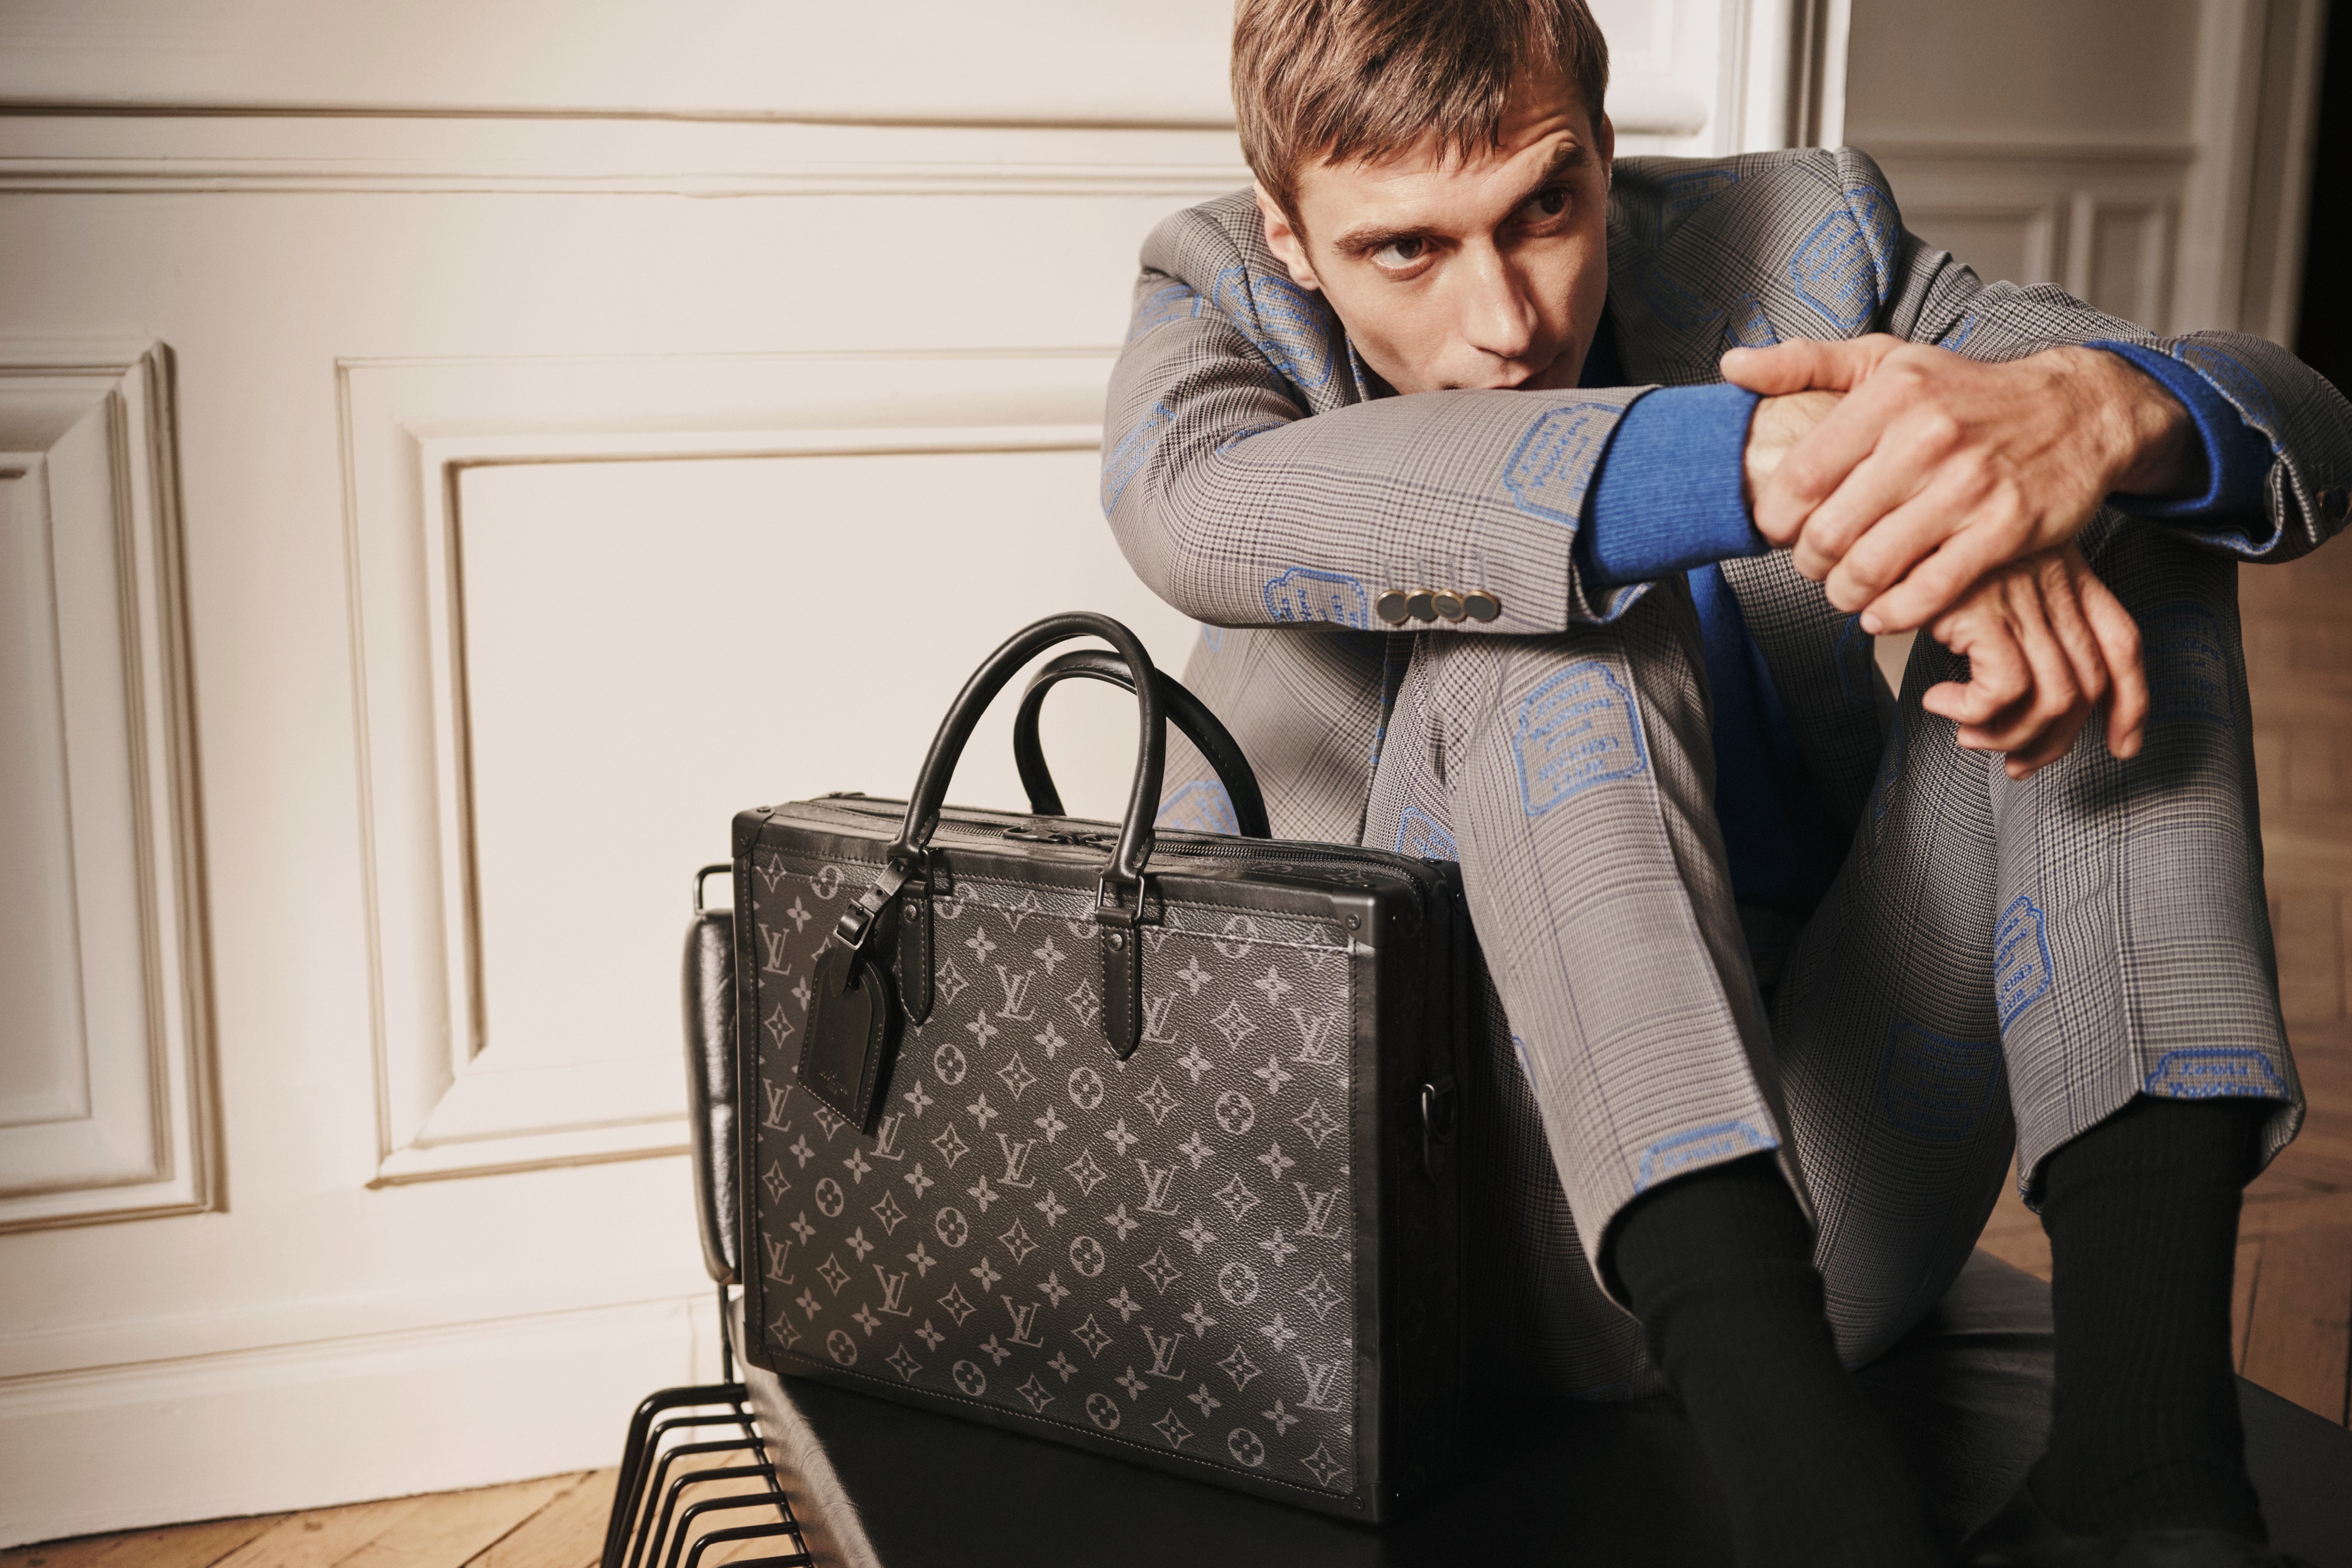 Louis Vuitton présente ses nouveaux sacs Homme imaginés par Virgil Abloh